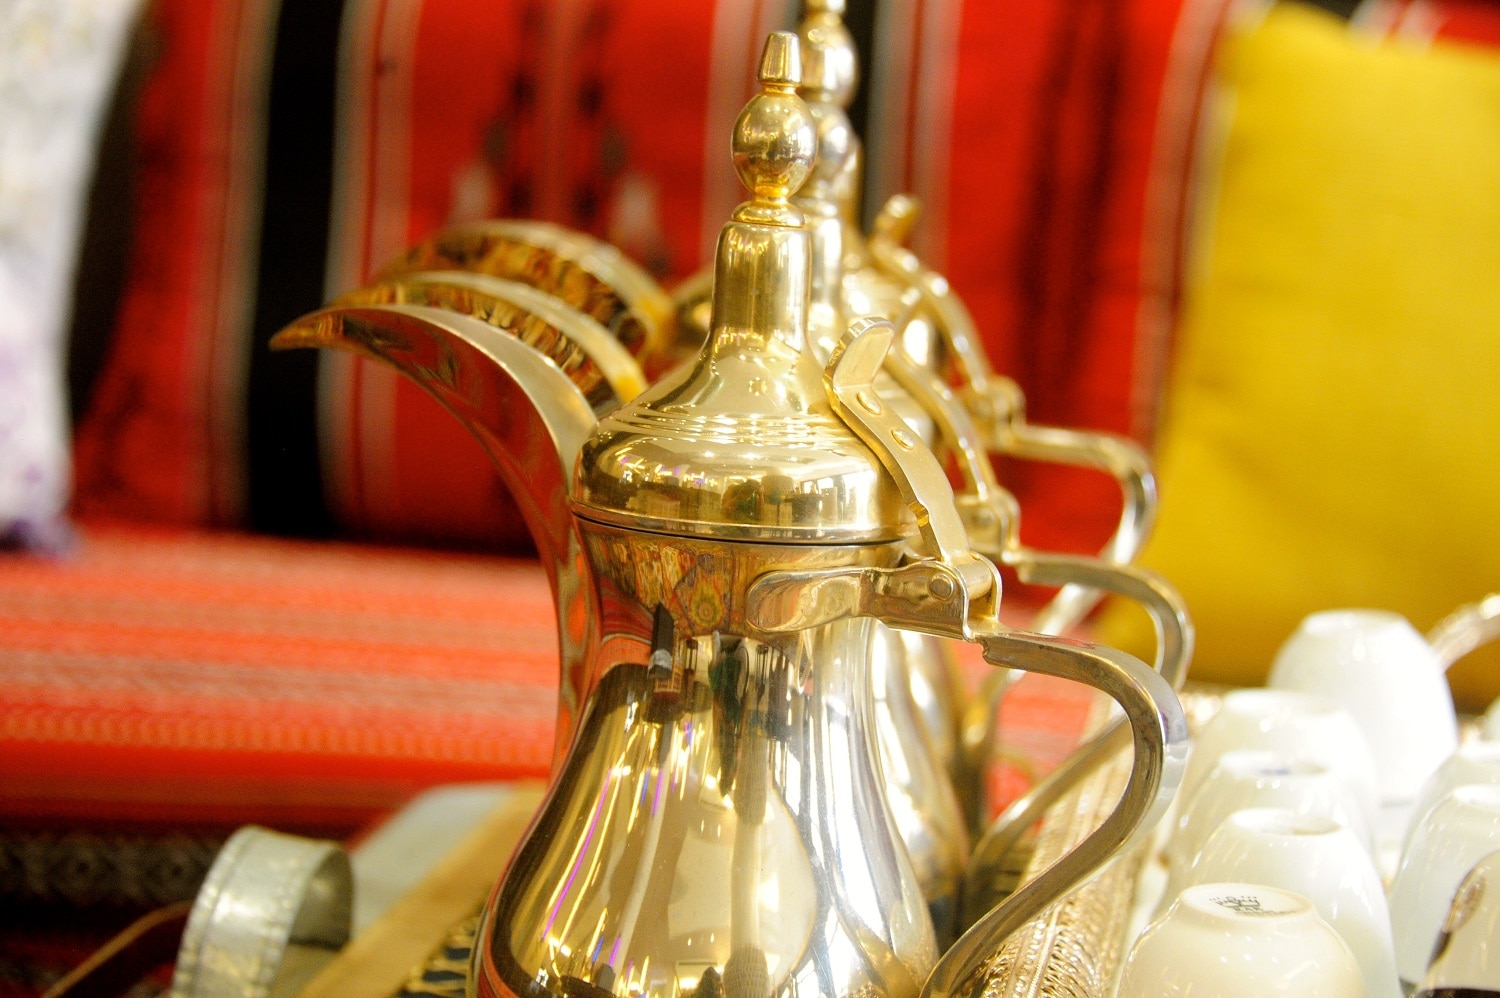 Dallah, a brass coffee pot